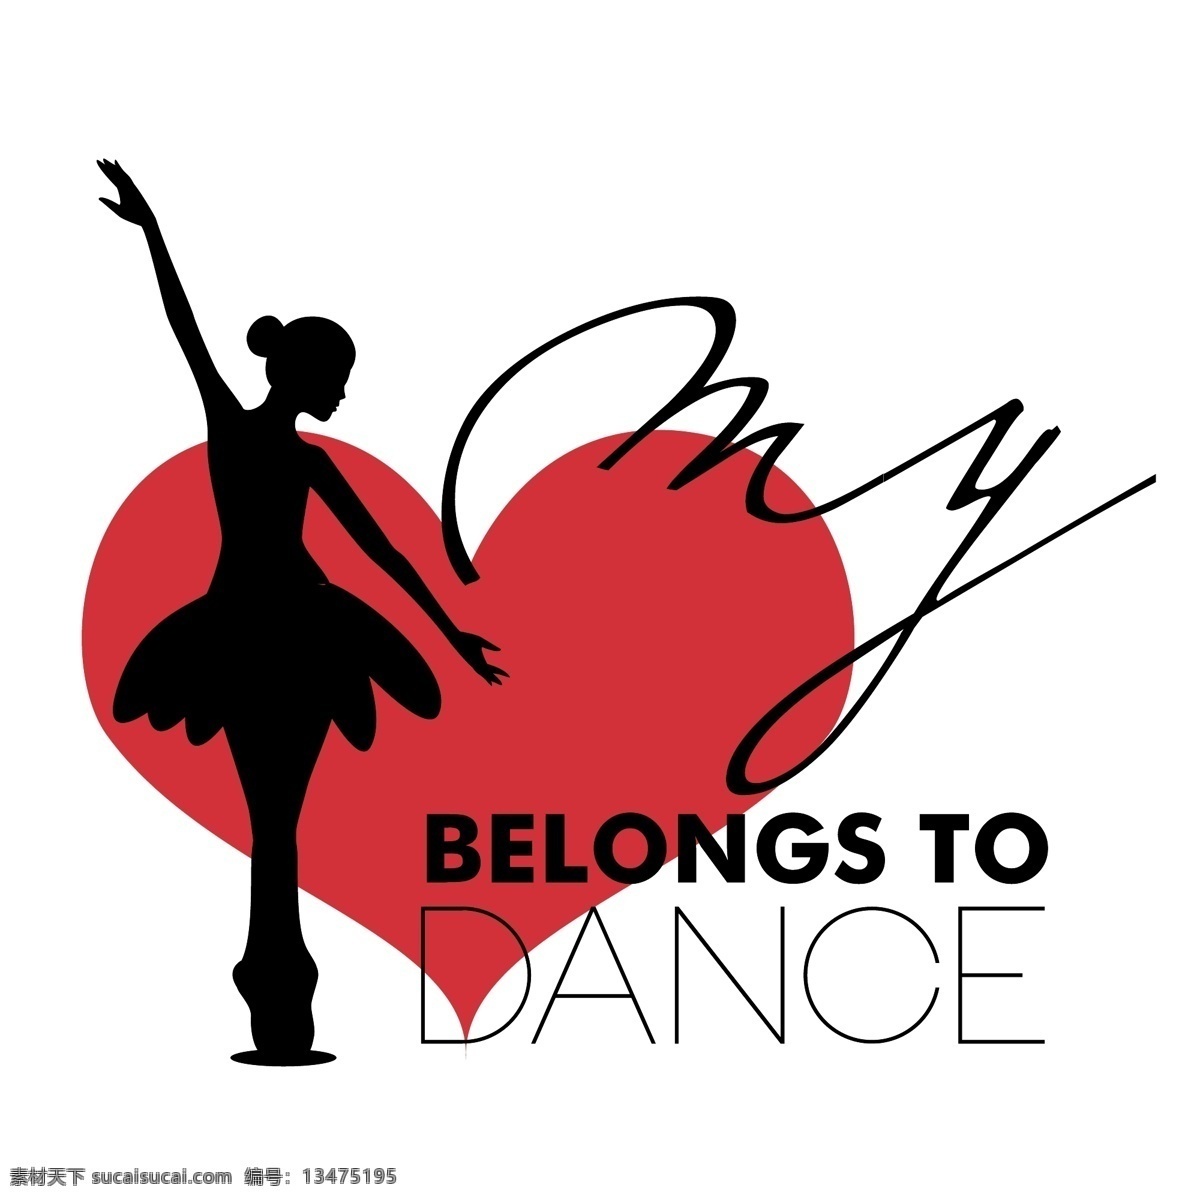 芭蕾舞 舞蹈 海报 扁平舞者 舞者 跳舞 矢量素材 舞蹈者 唯美背景 剪影 舞蹈海报